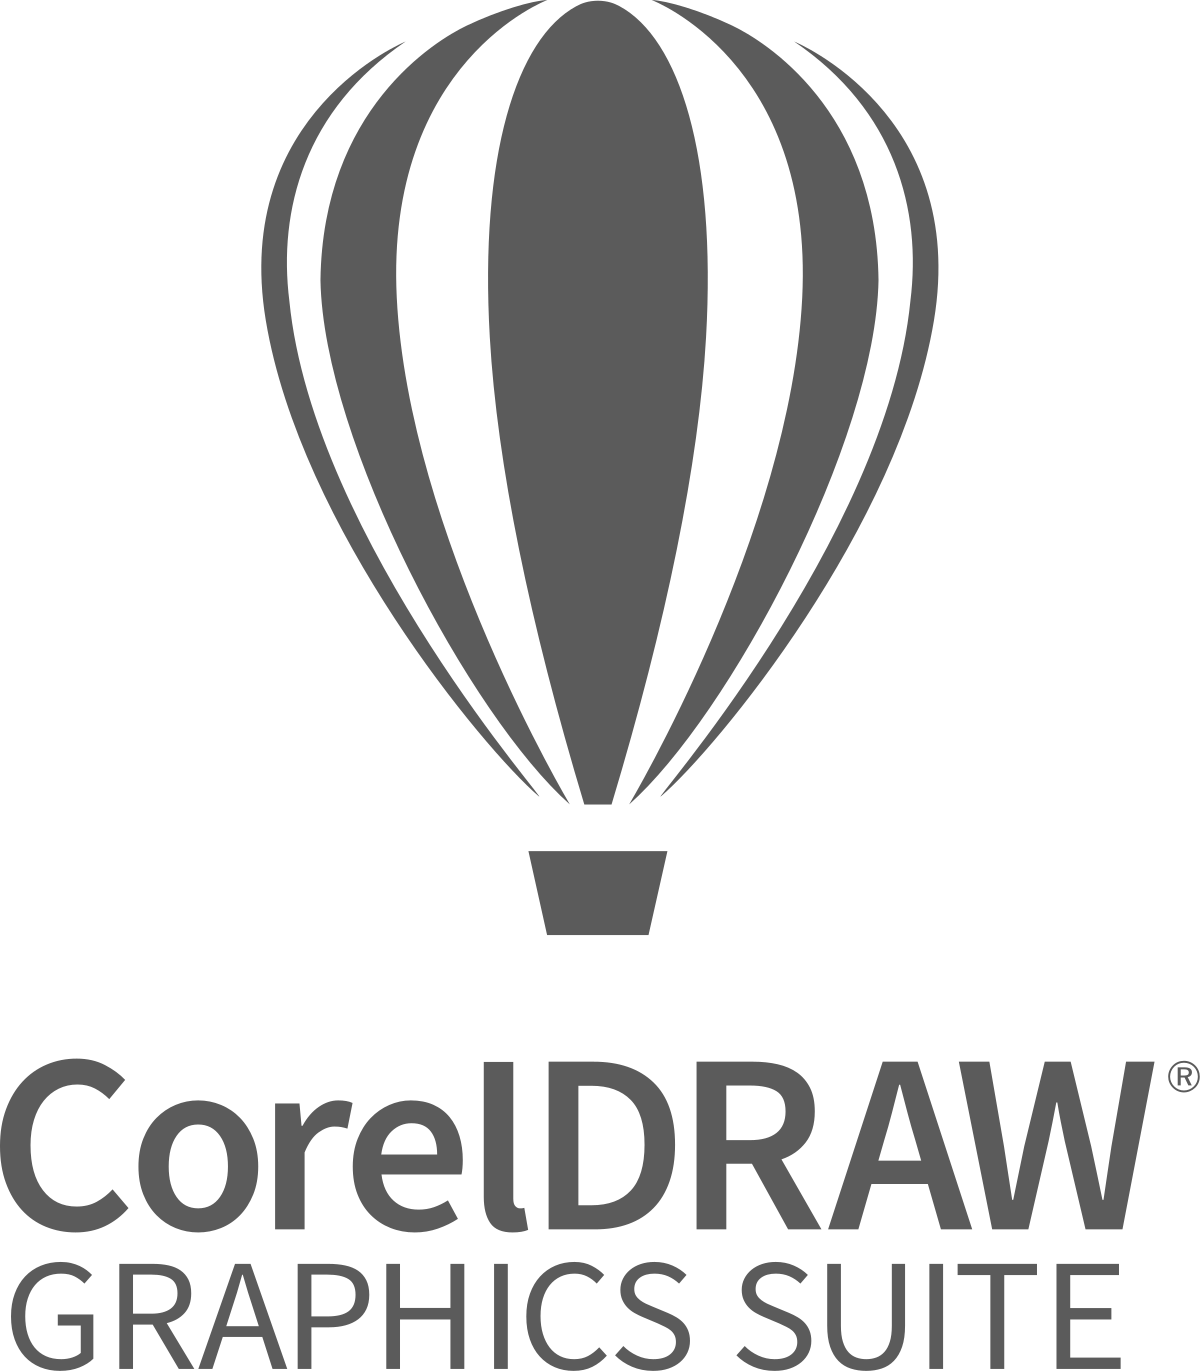 coreldraw new version 2022 free download